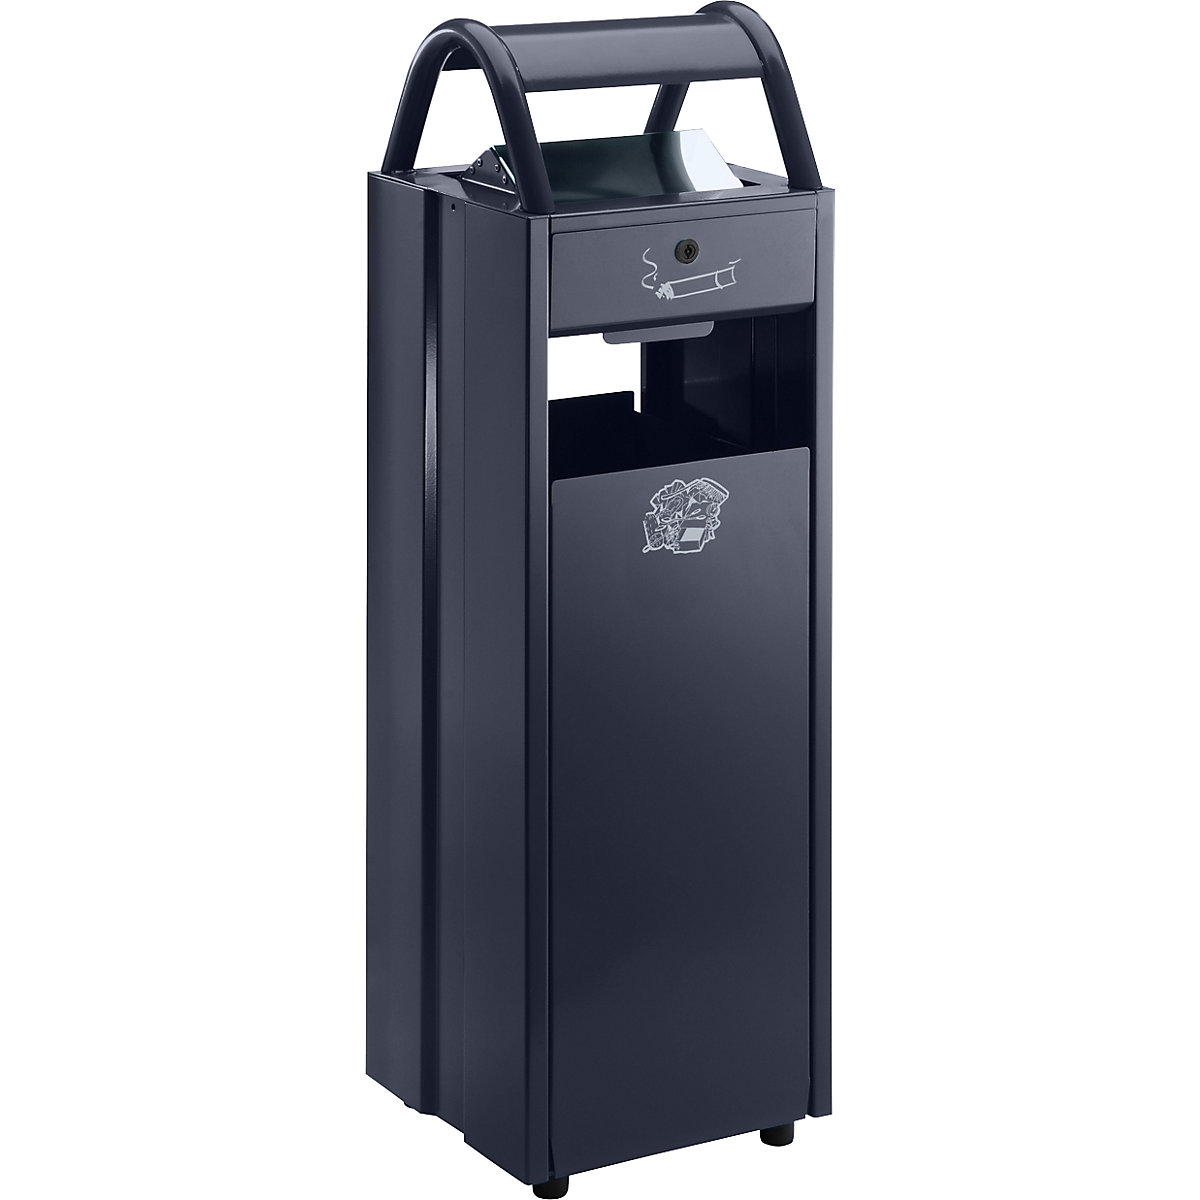 VAR – Sběrač odpadů s popelníkem a ochrannou stříškou proti dešti, objem 35 l, š x v x h 300 x 960 x 250 mm, černošedá RAL 7021